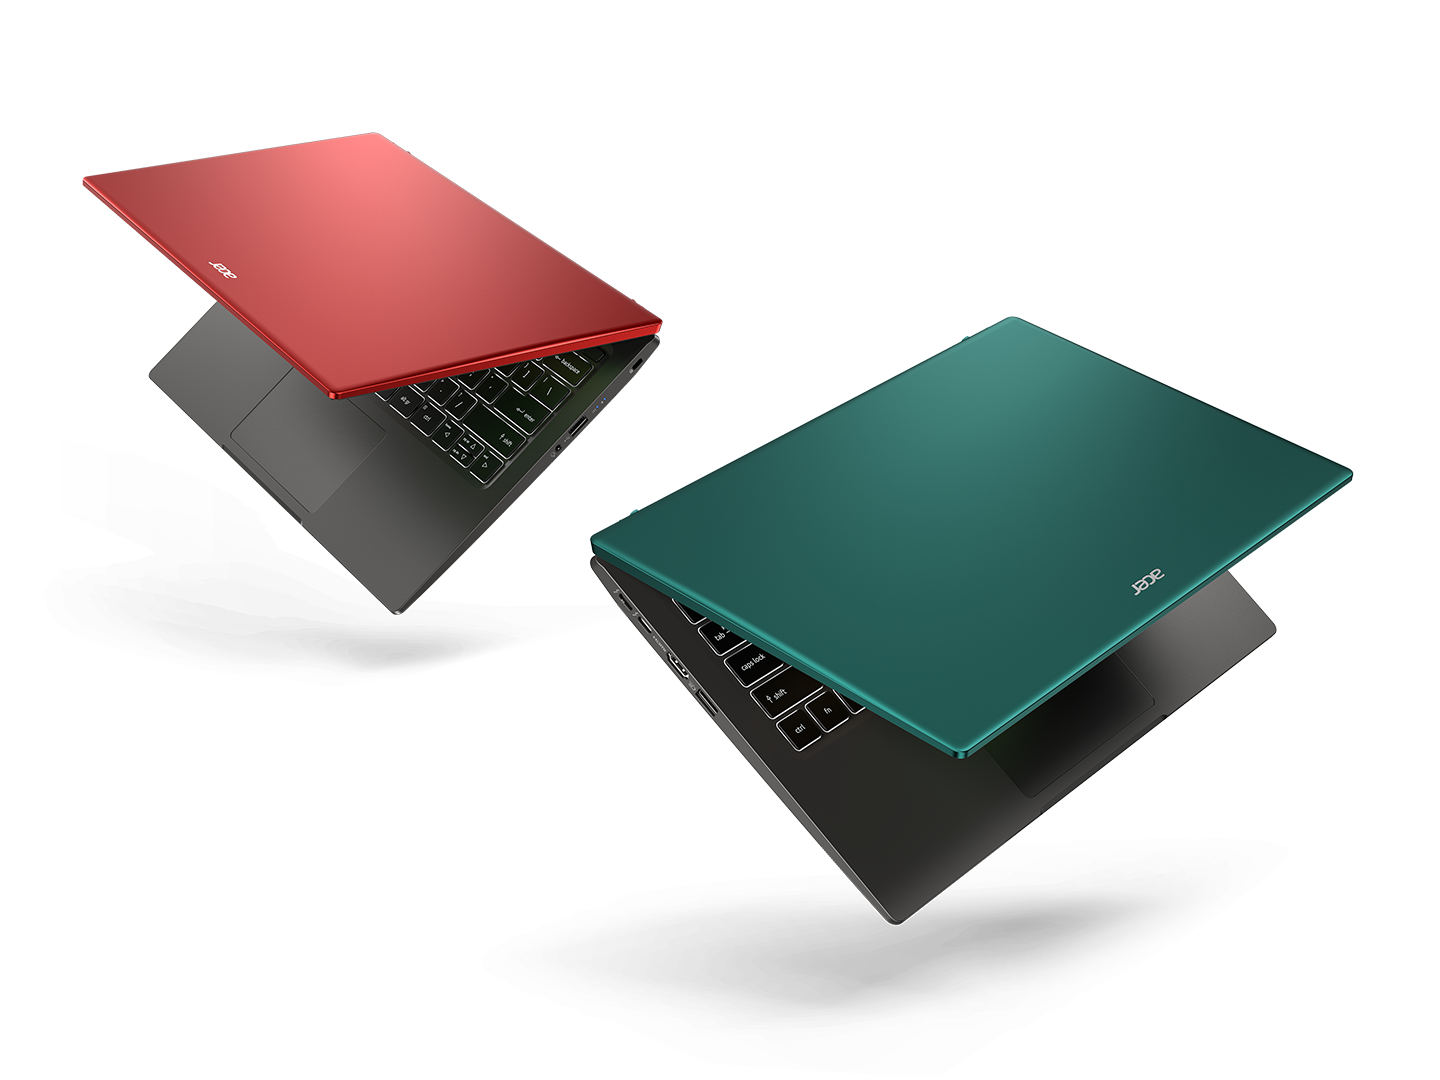 Acer anunció un par de adiciones a su línea delgada, liviana y poderosa de laptops Swift X con GPU discretas, que consta de nuevos modelos